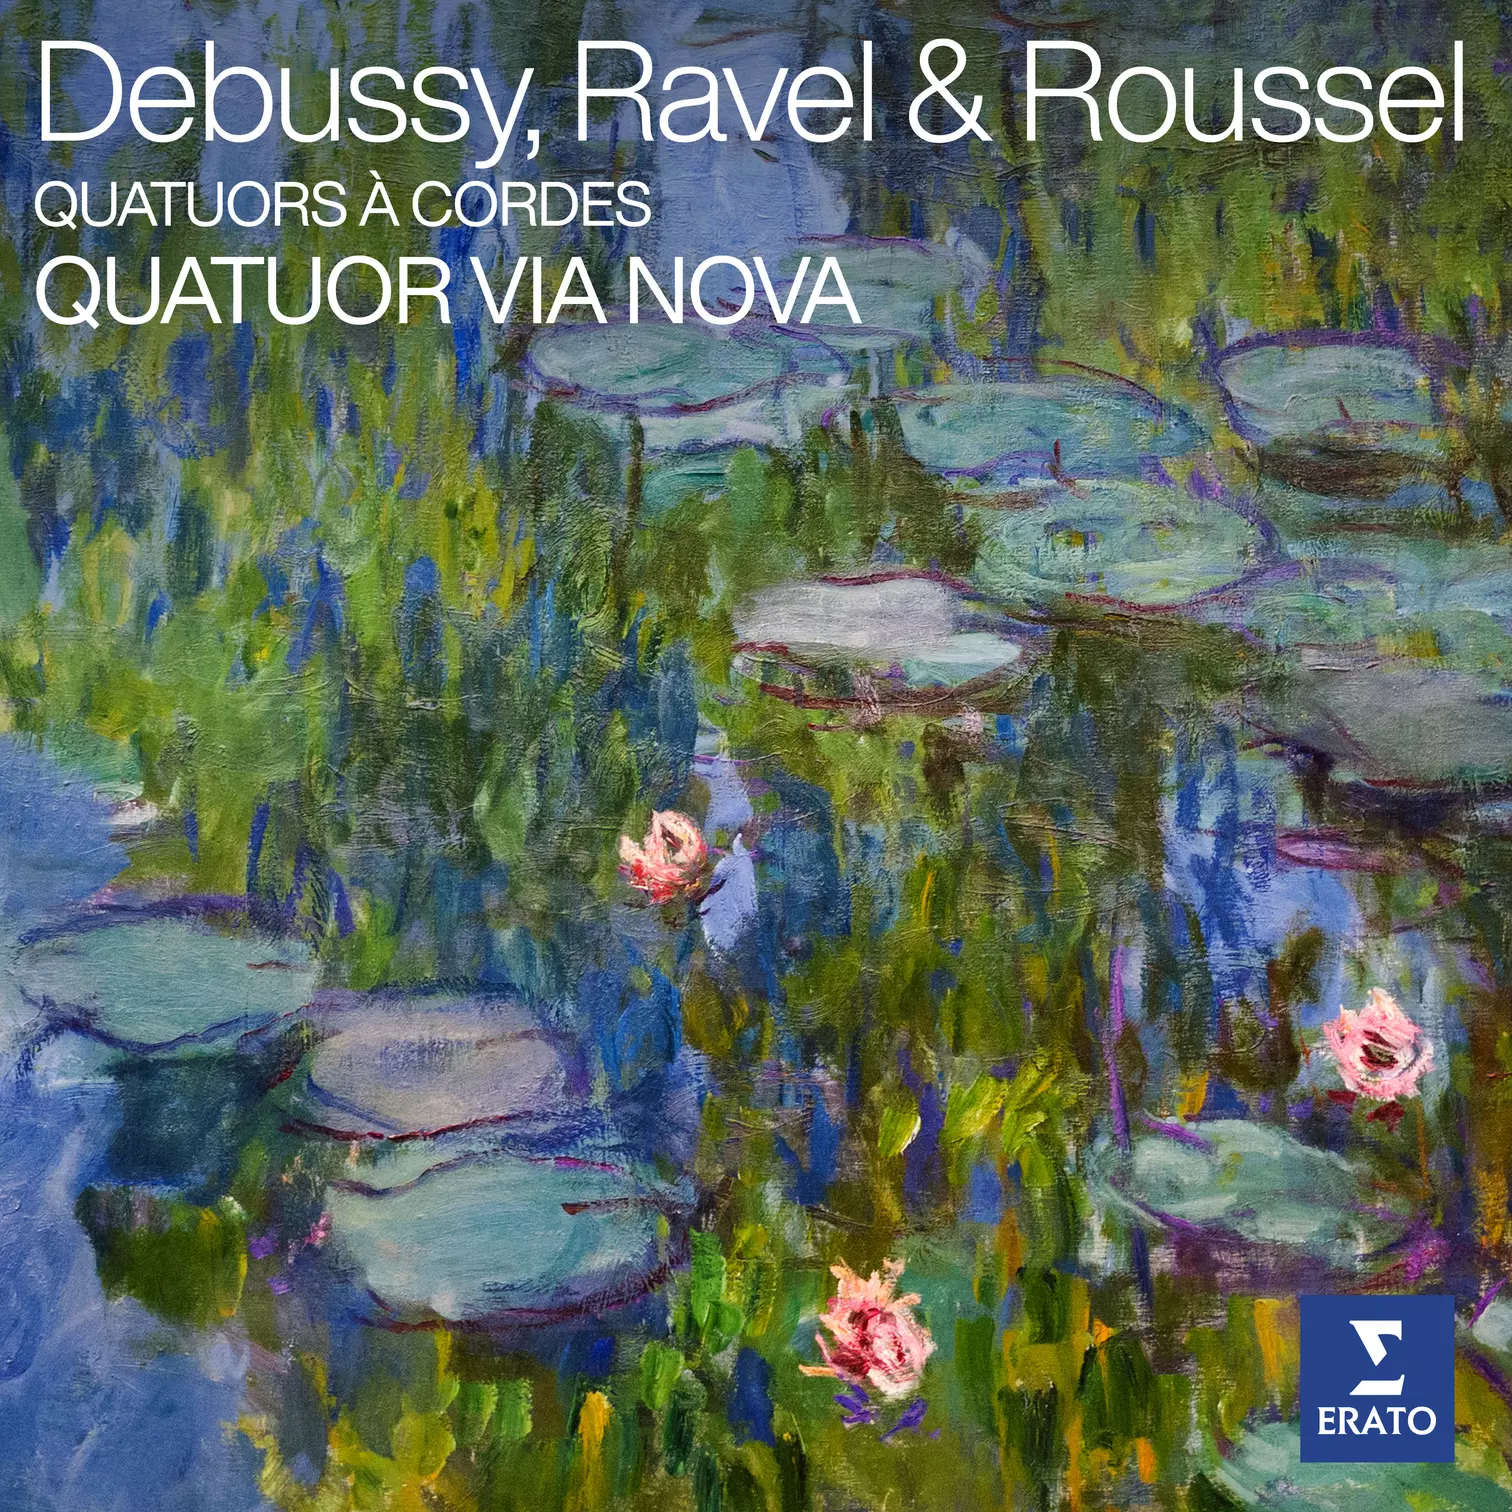 Debussy, Ravel & Roussel: Quatuors à cordes